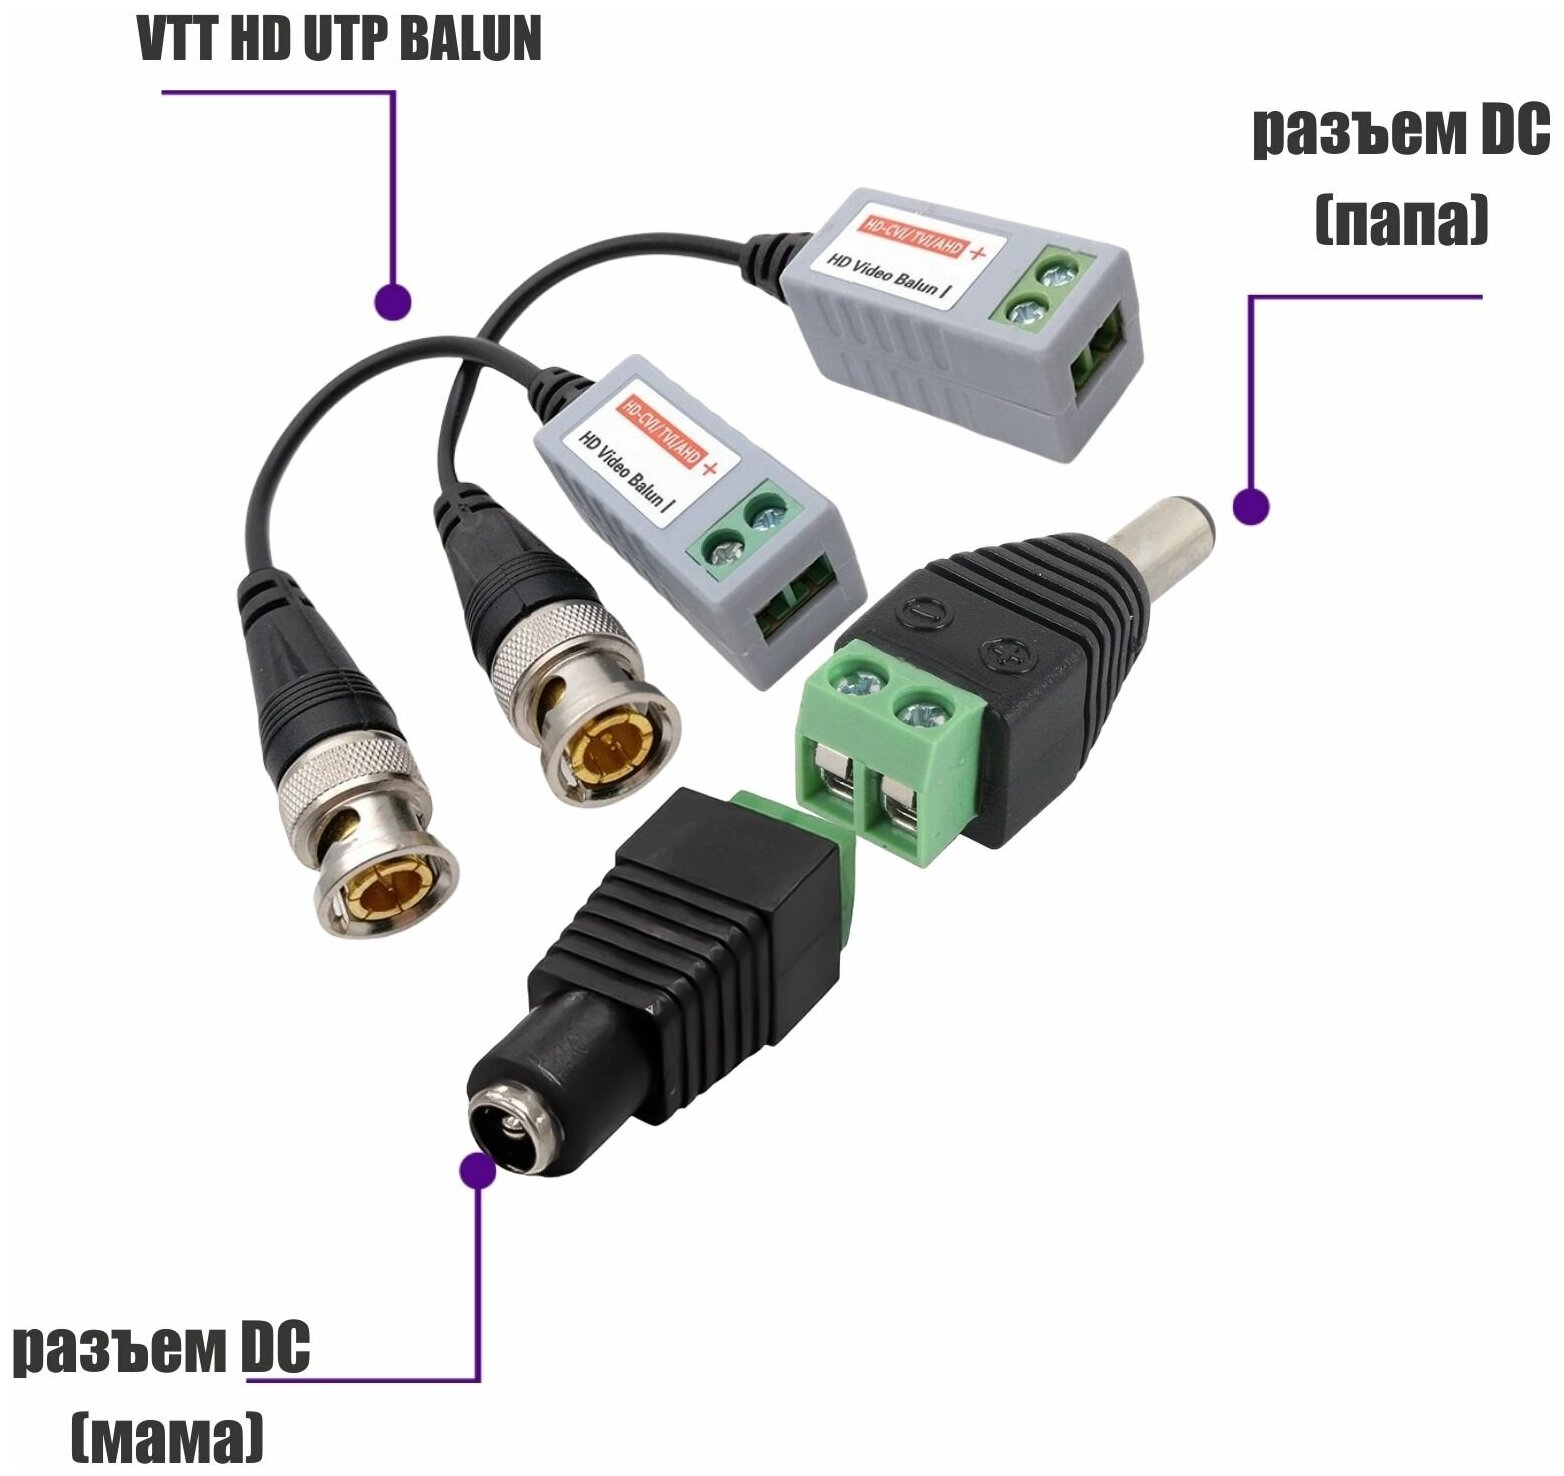 Комплект VTT HD UTP BALUN приемо-передатчики по витой паре AHD/CVI/TVI 4 шт. с переходниками DC (папа) и DC (мама) с клеммными колодками, по 2 шт.